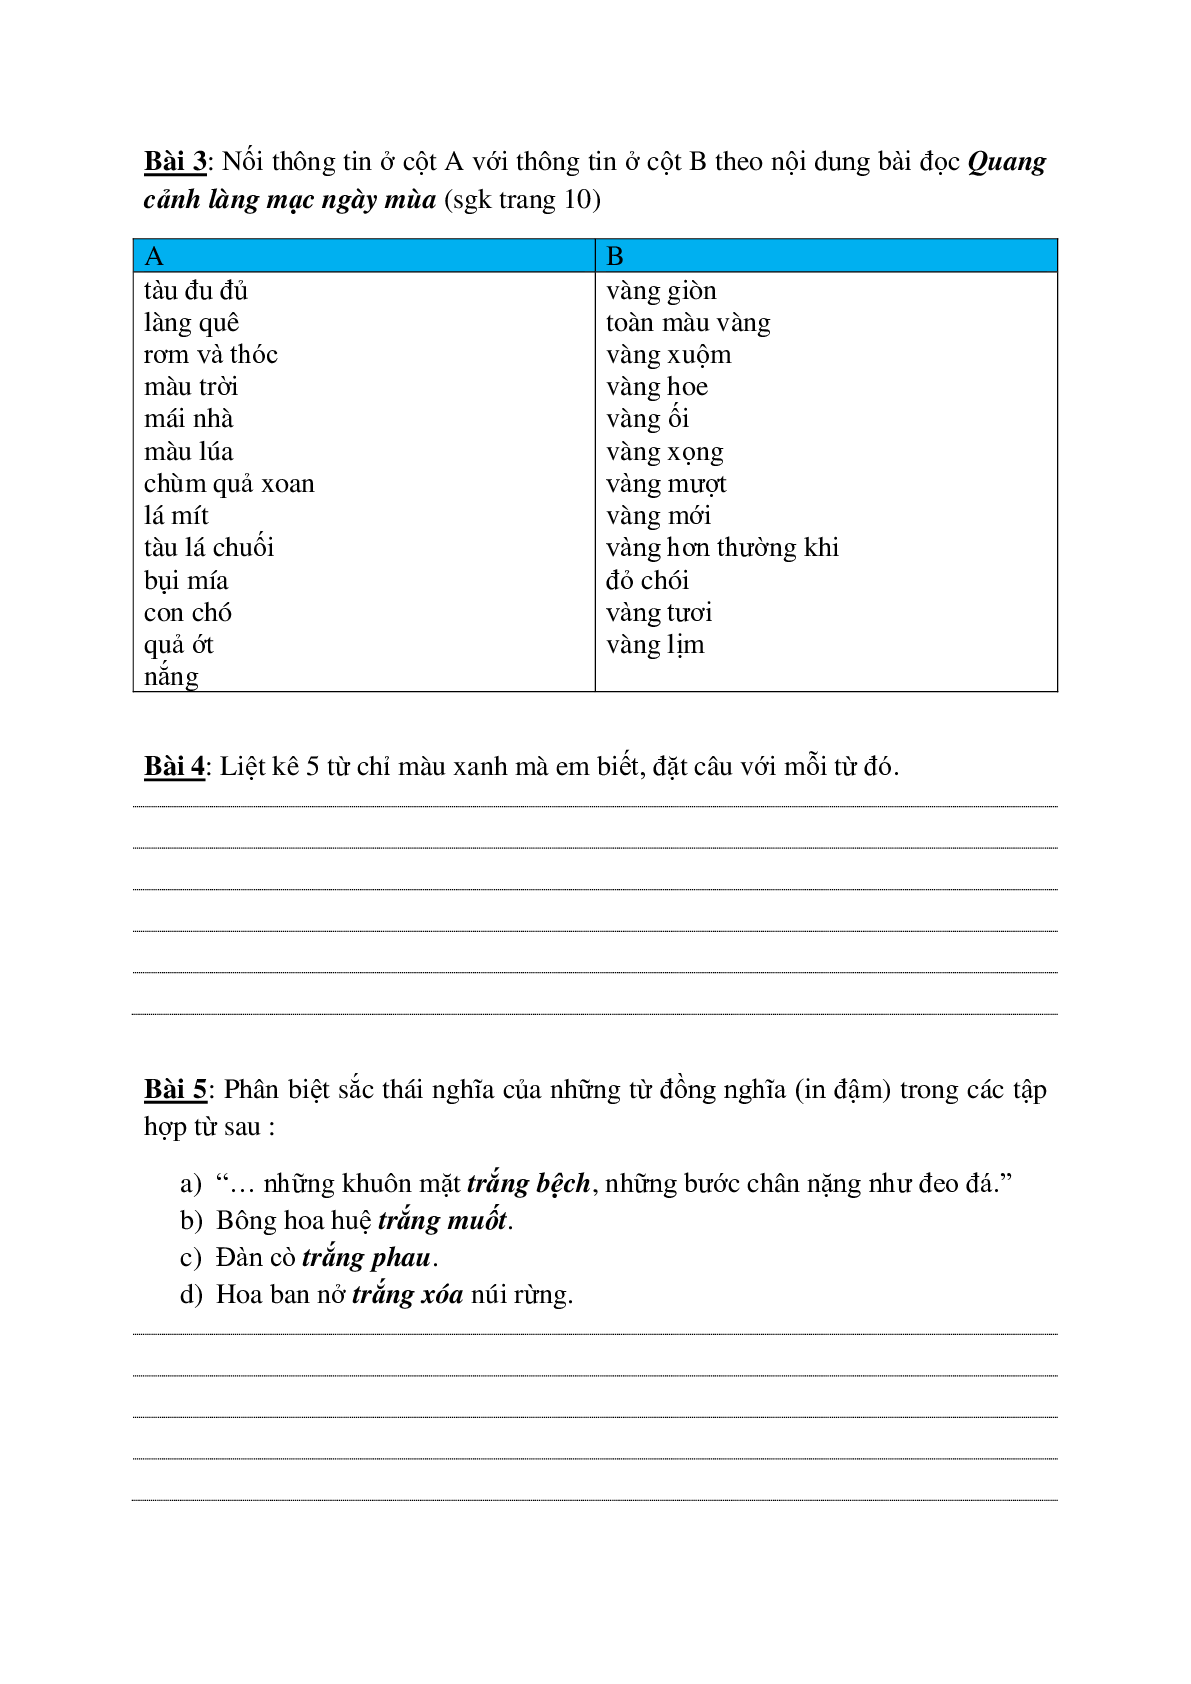 Bài tập nâng cao môn Tiếng Việt lớp 5 (trang 2)